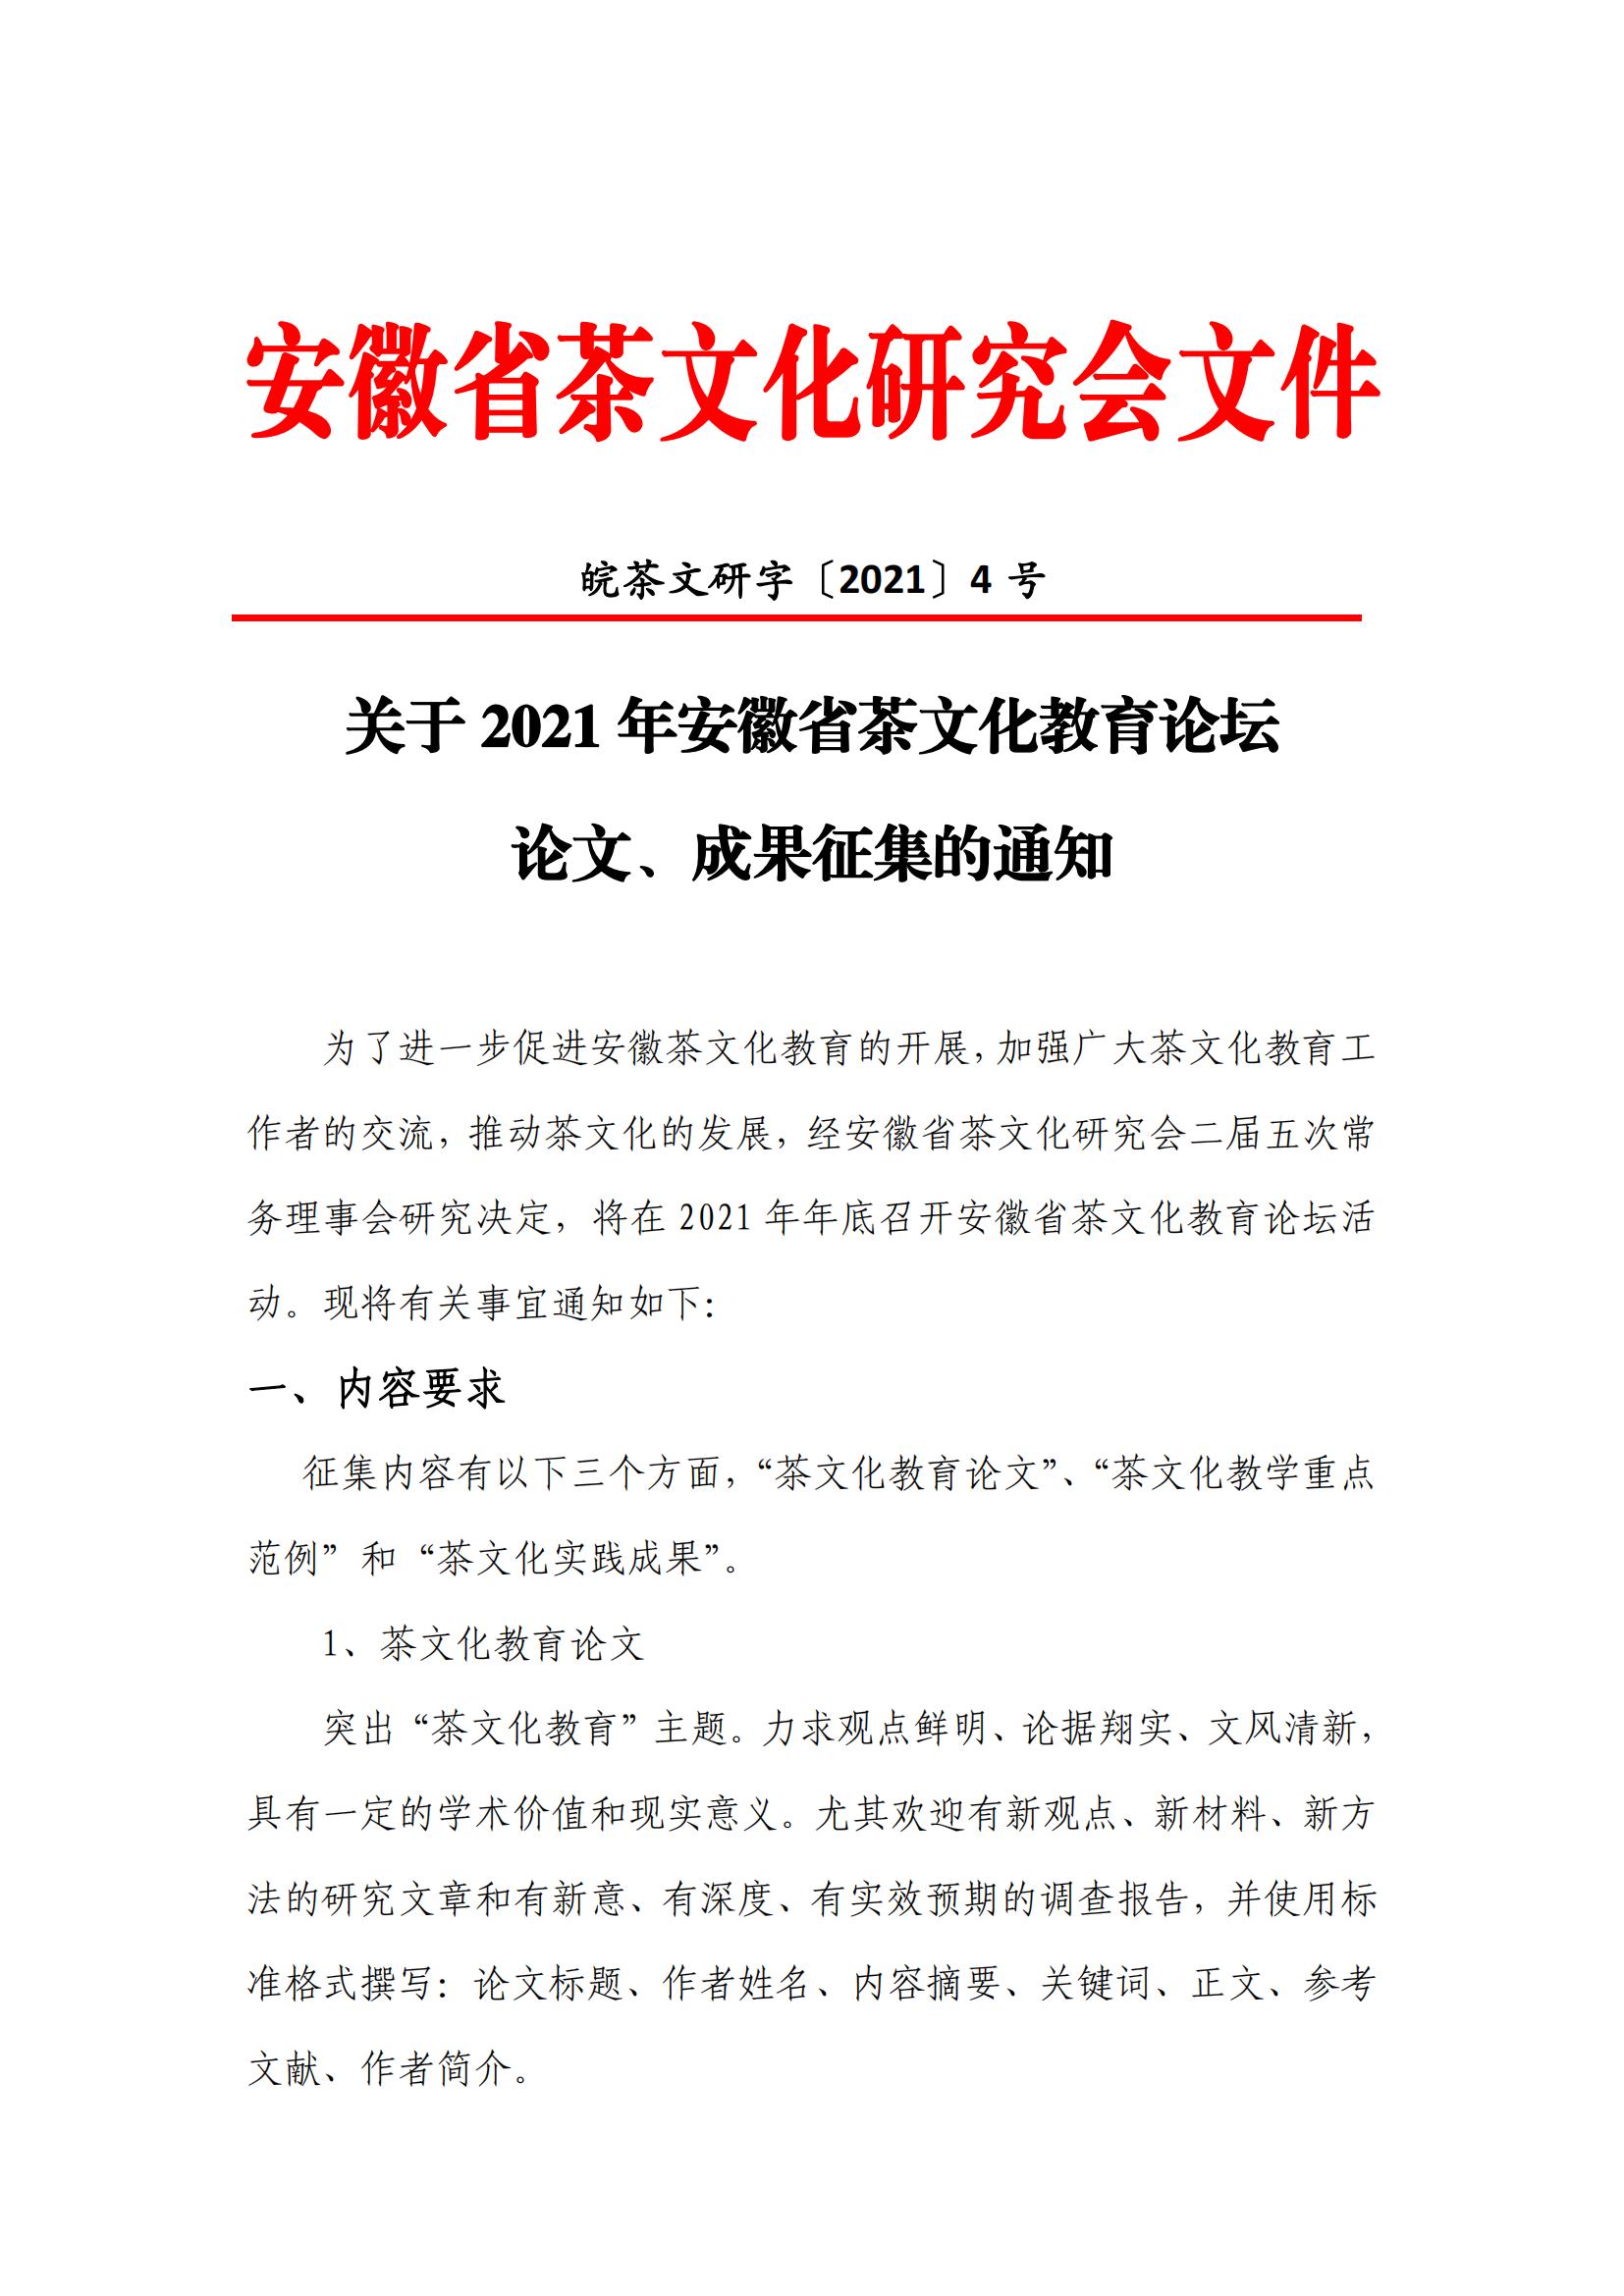 关于2021年安徽省茶文化教育论坛论文、成果征集的通知